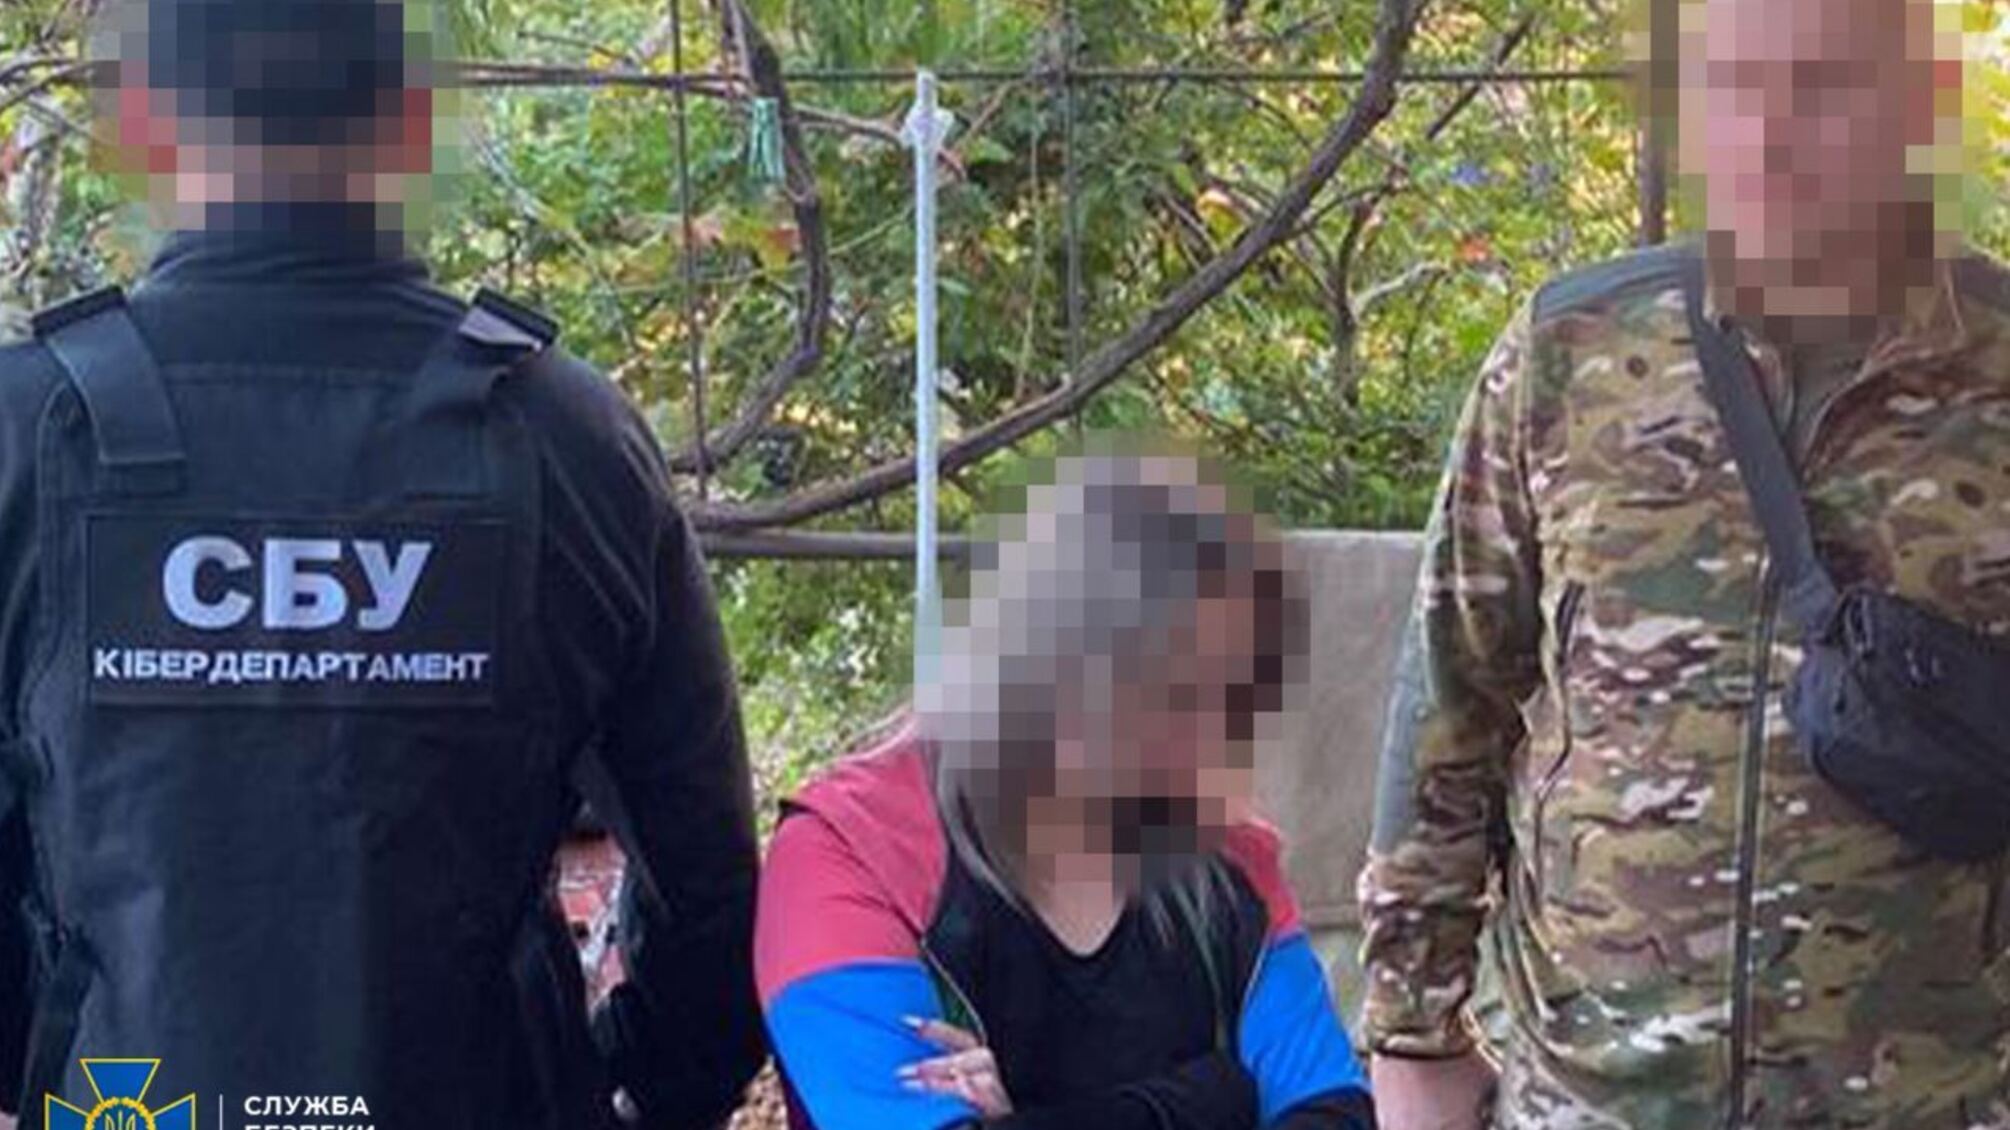 'Зливали' ФСБ дані родичів-військовослужбовців: у Запоріжжі затримали двох колаборанток